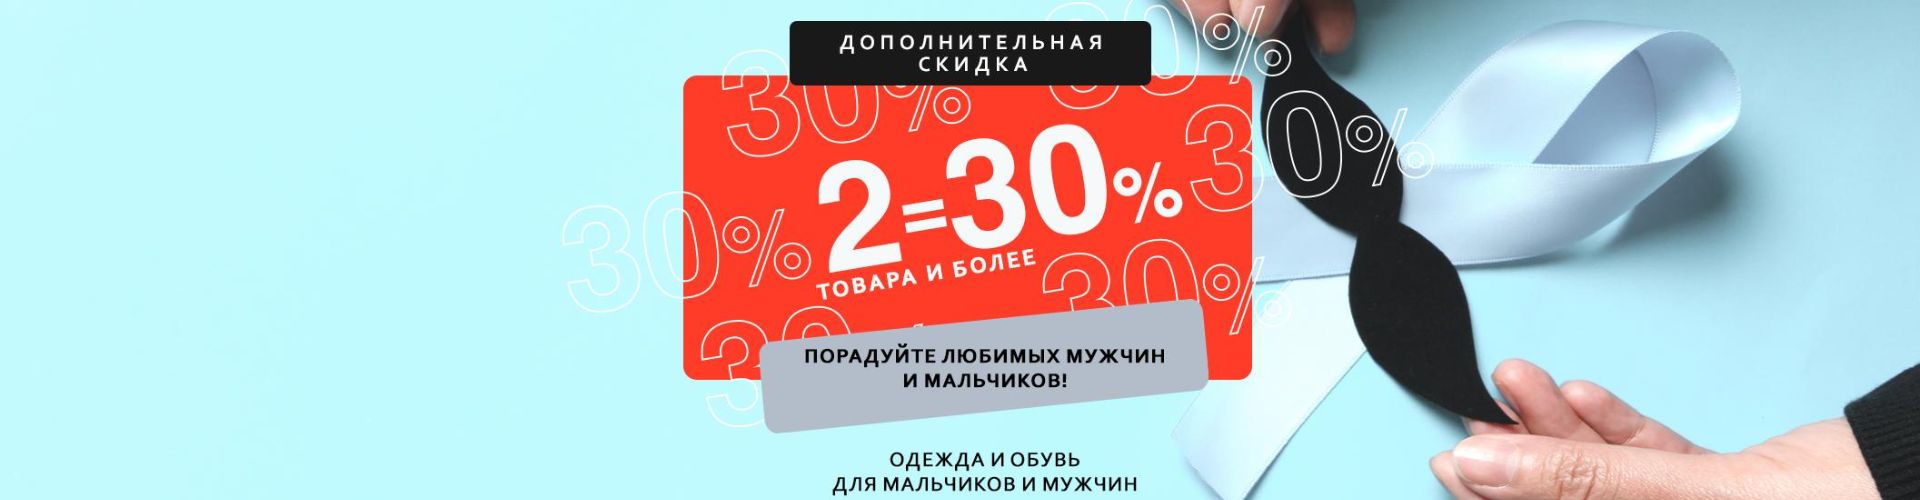 2=30% в ShoppingLive